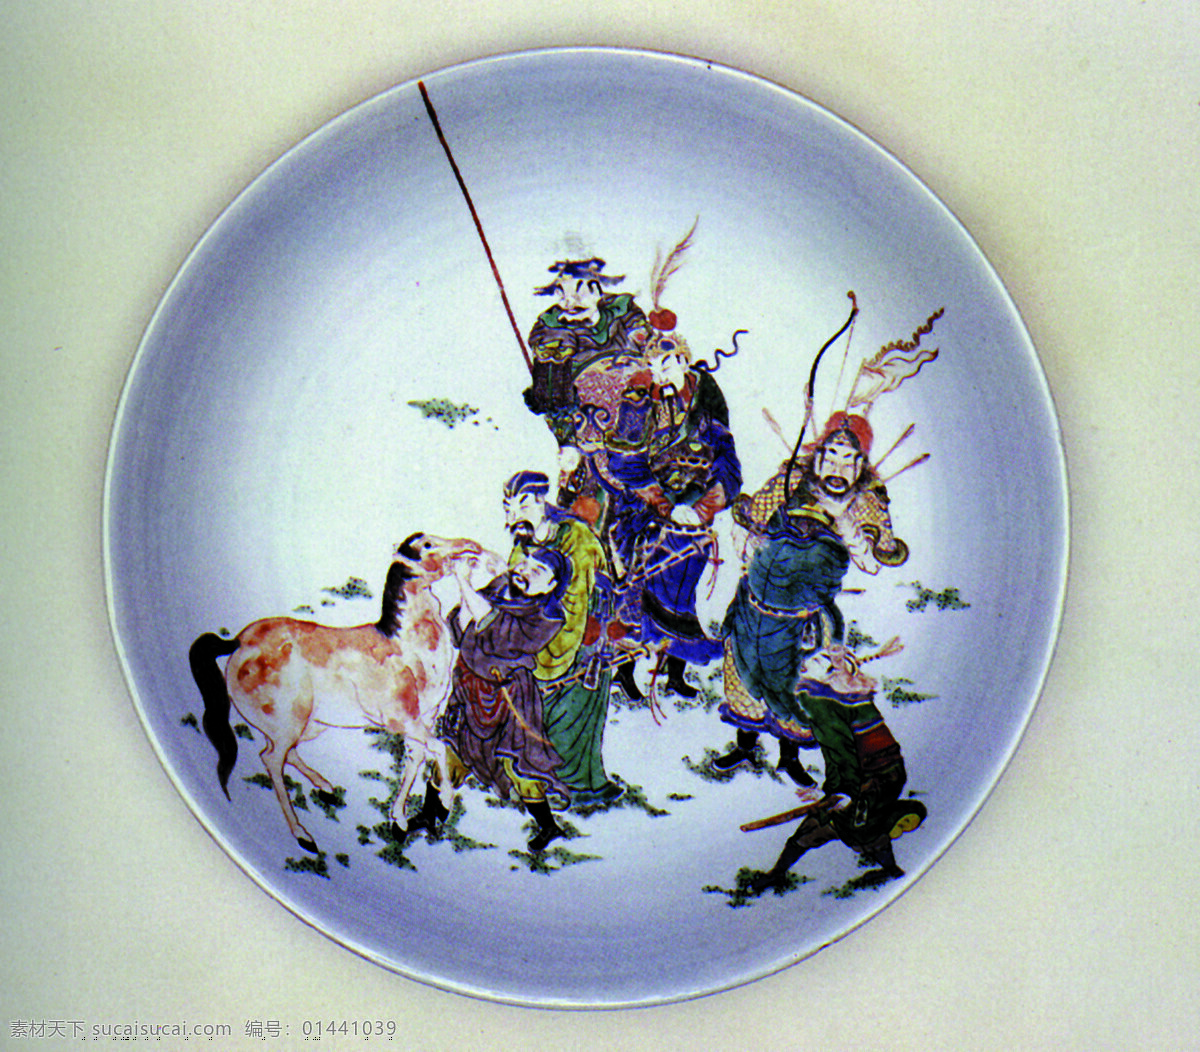 盘子免费下载 瓷器 古董 花瓶 盘子 陶瓷 碗 艺术品 中国风 中华艺术绘 文化艺术